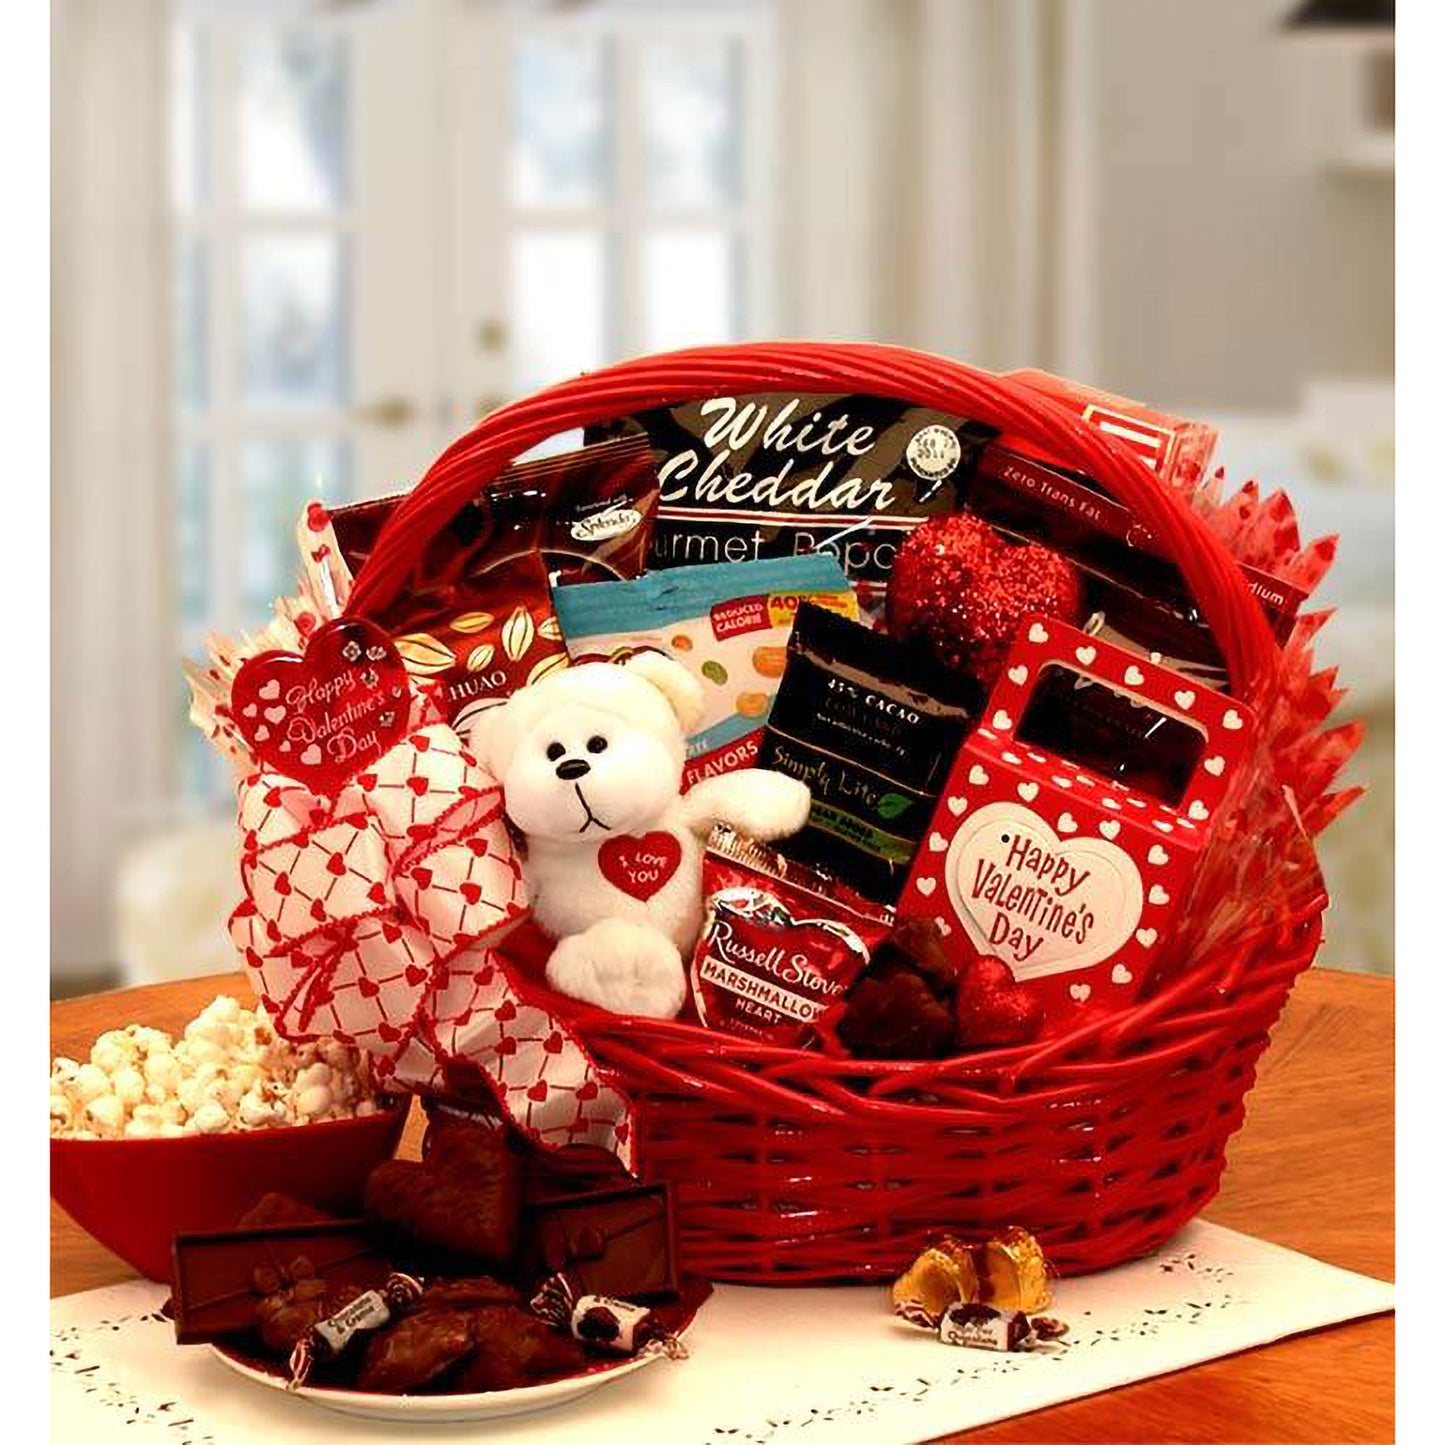 My Sugar-Free Valentine Gift Basket